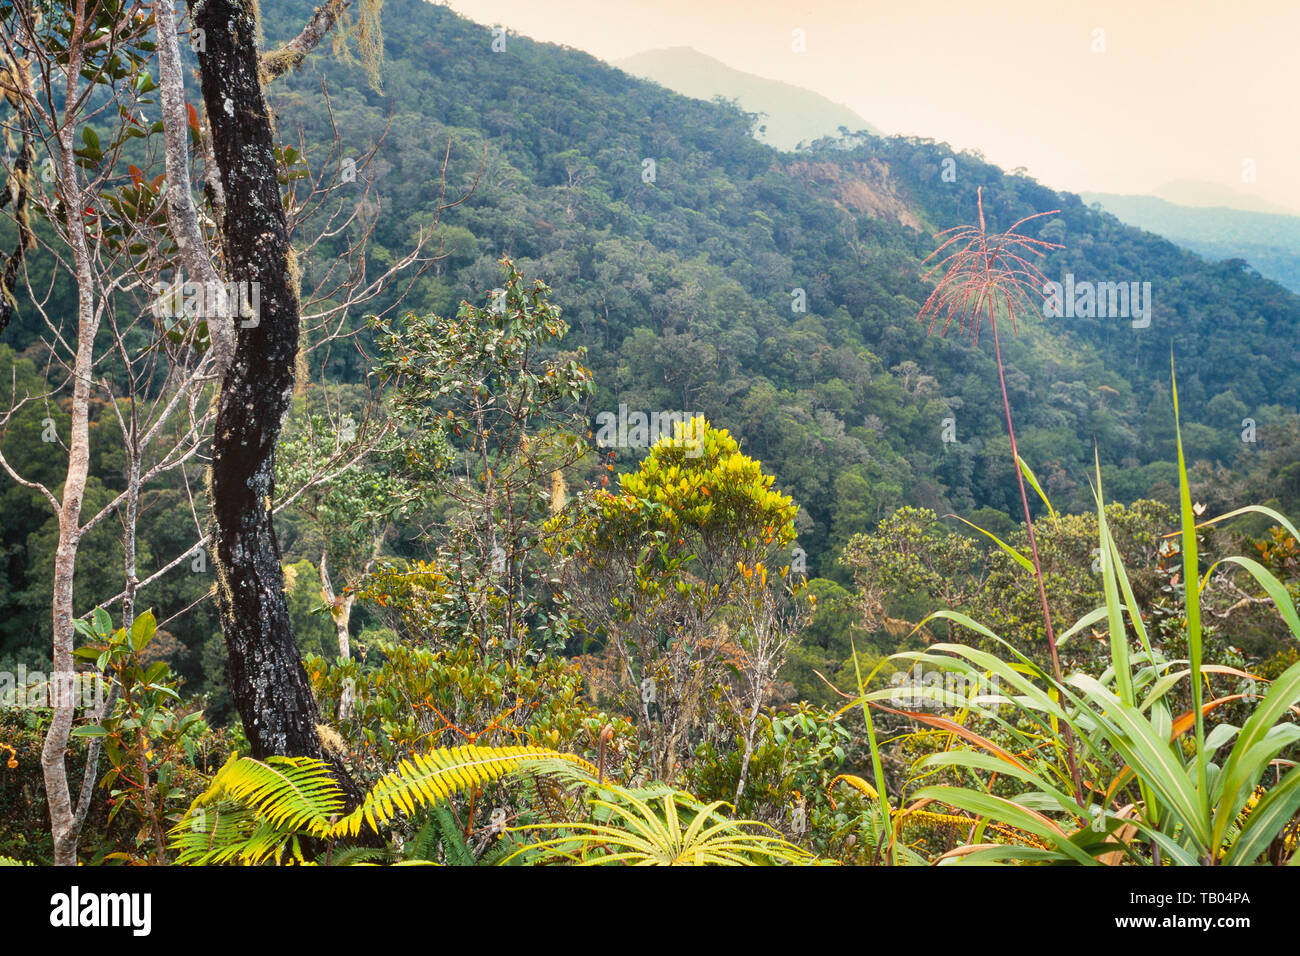 Mount Kinabalu, Sabah, montaine vegetation Stock Photo